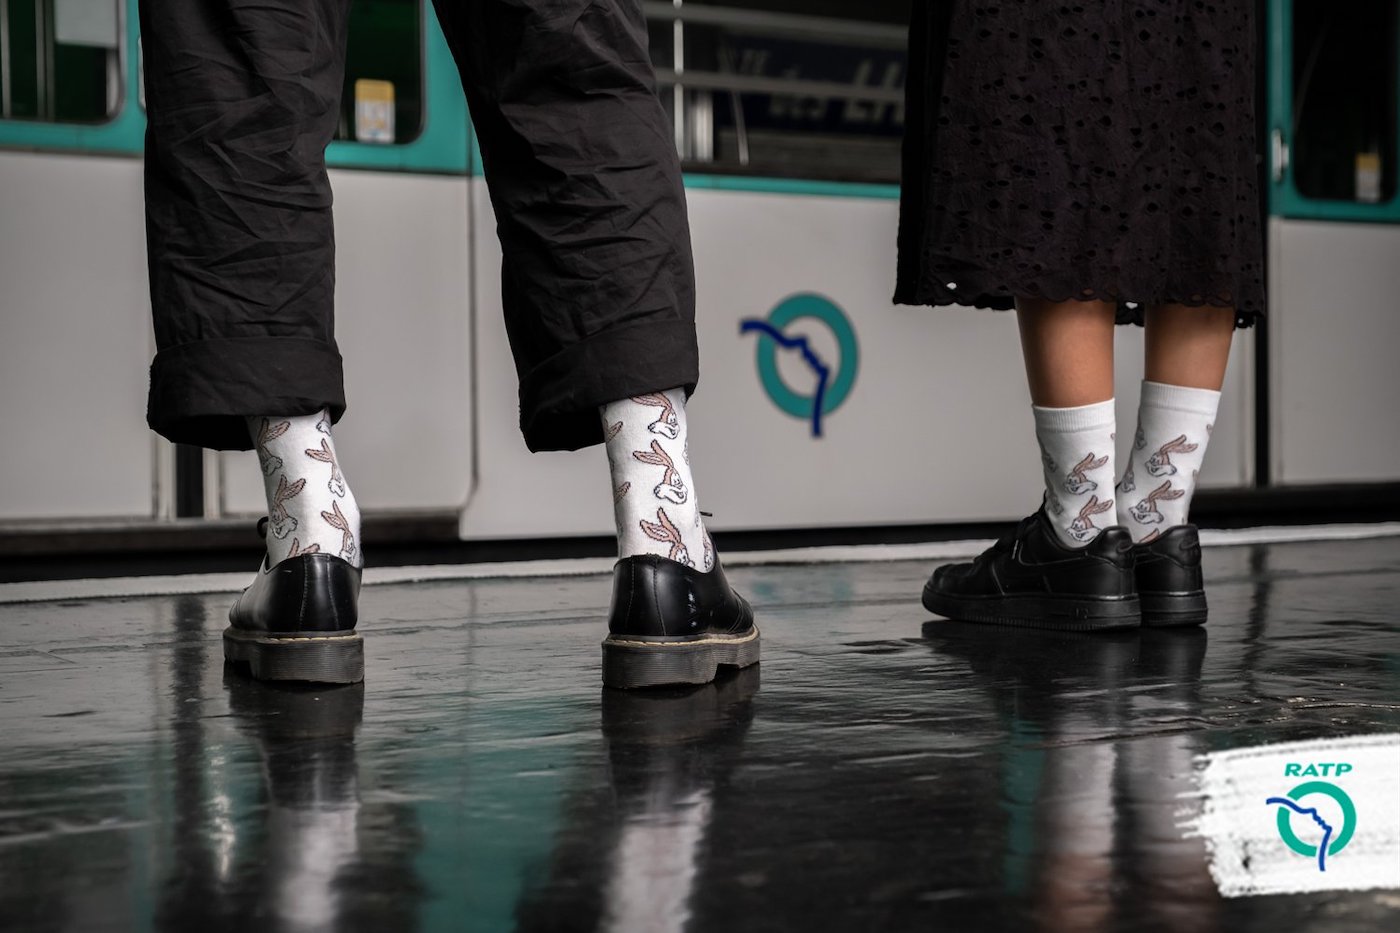 La RATP commercialise des chaussettes à l’effigie de sa mascotte : Serge le Lapin